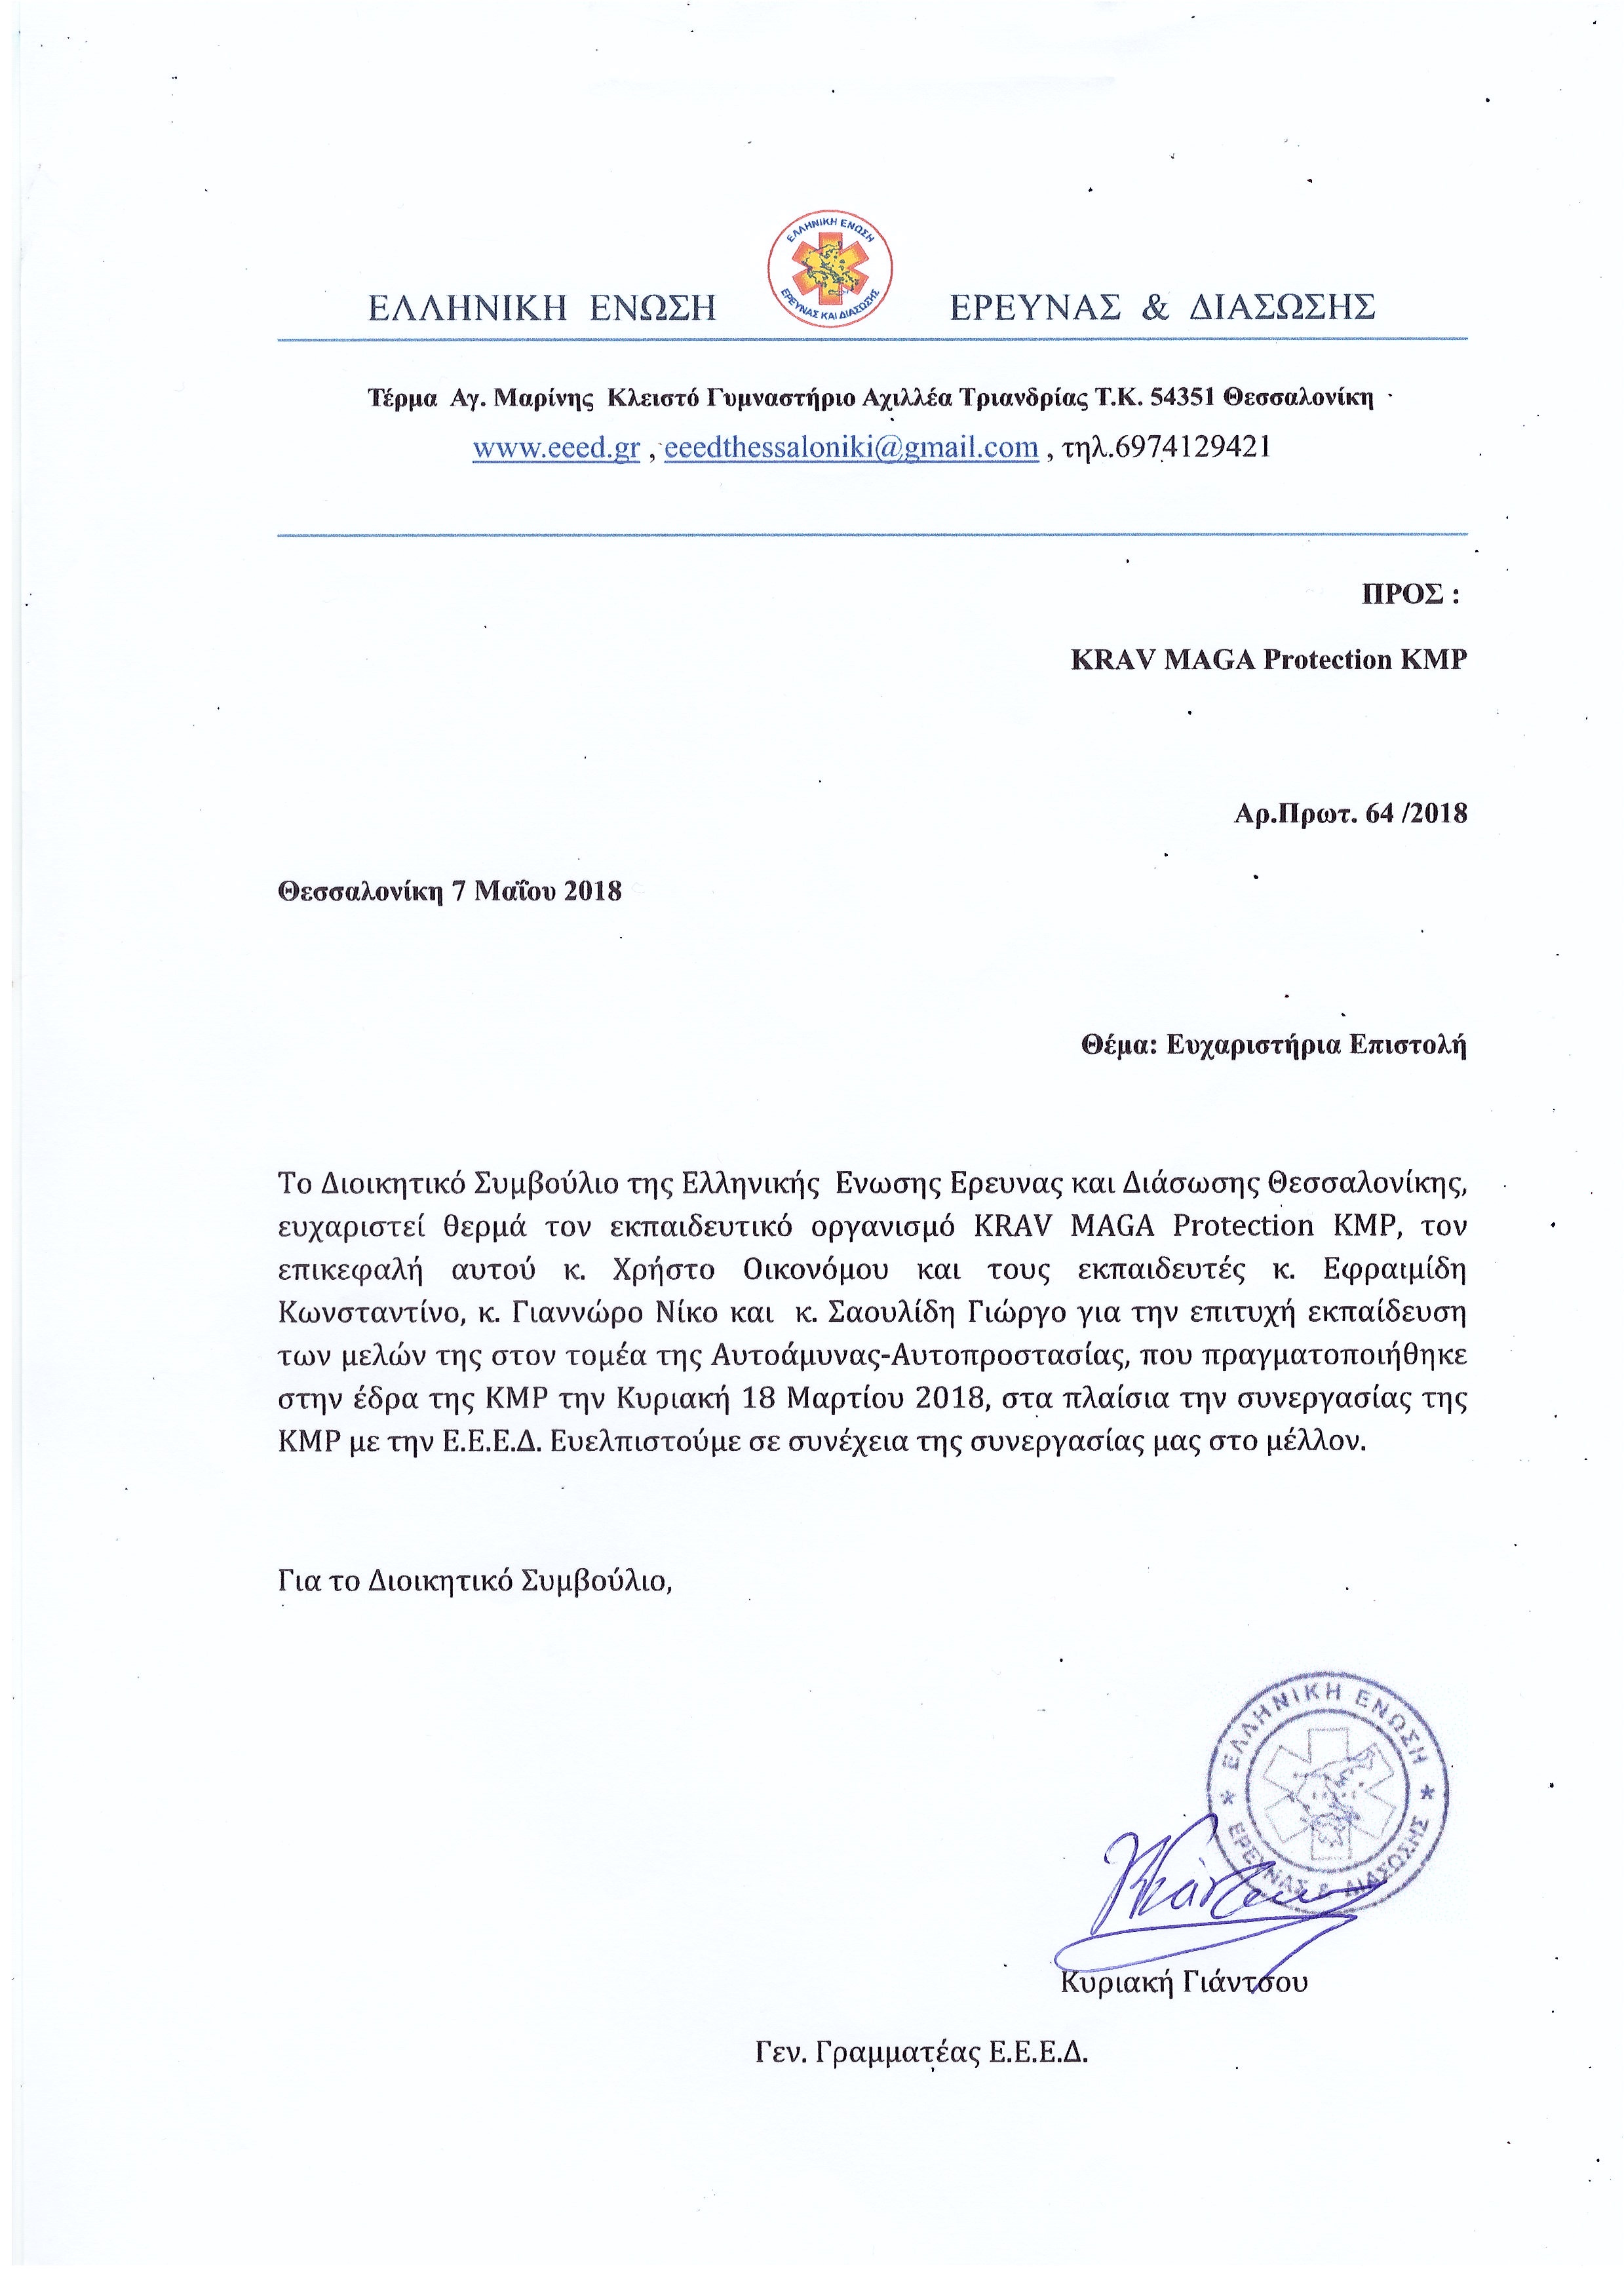 Ευχαριστήρια επιστολή της Ελληνικής Ένωσης Έρευνας & Διασωσης προς την KMP